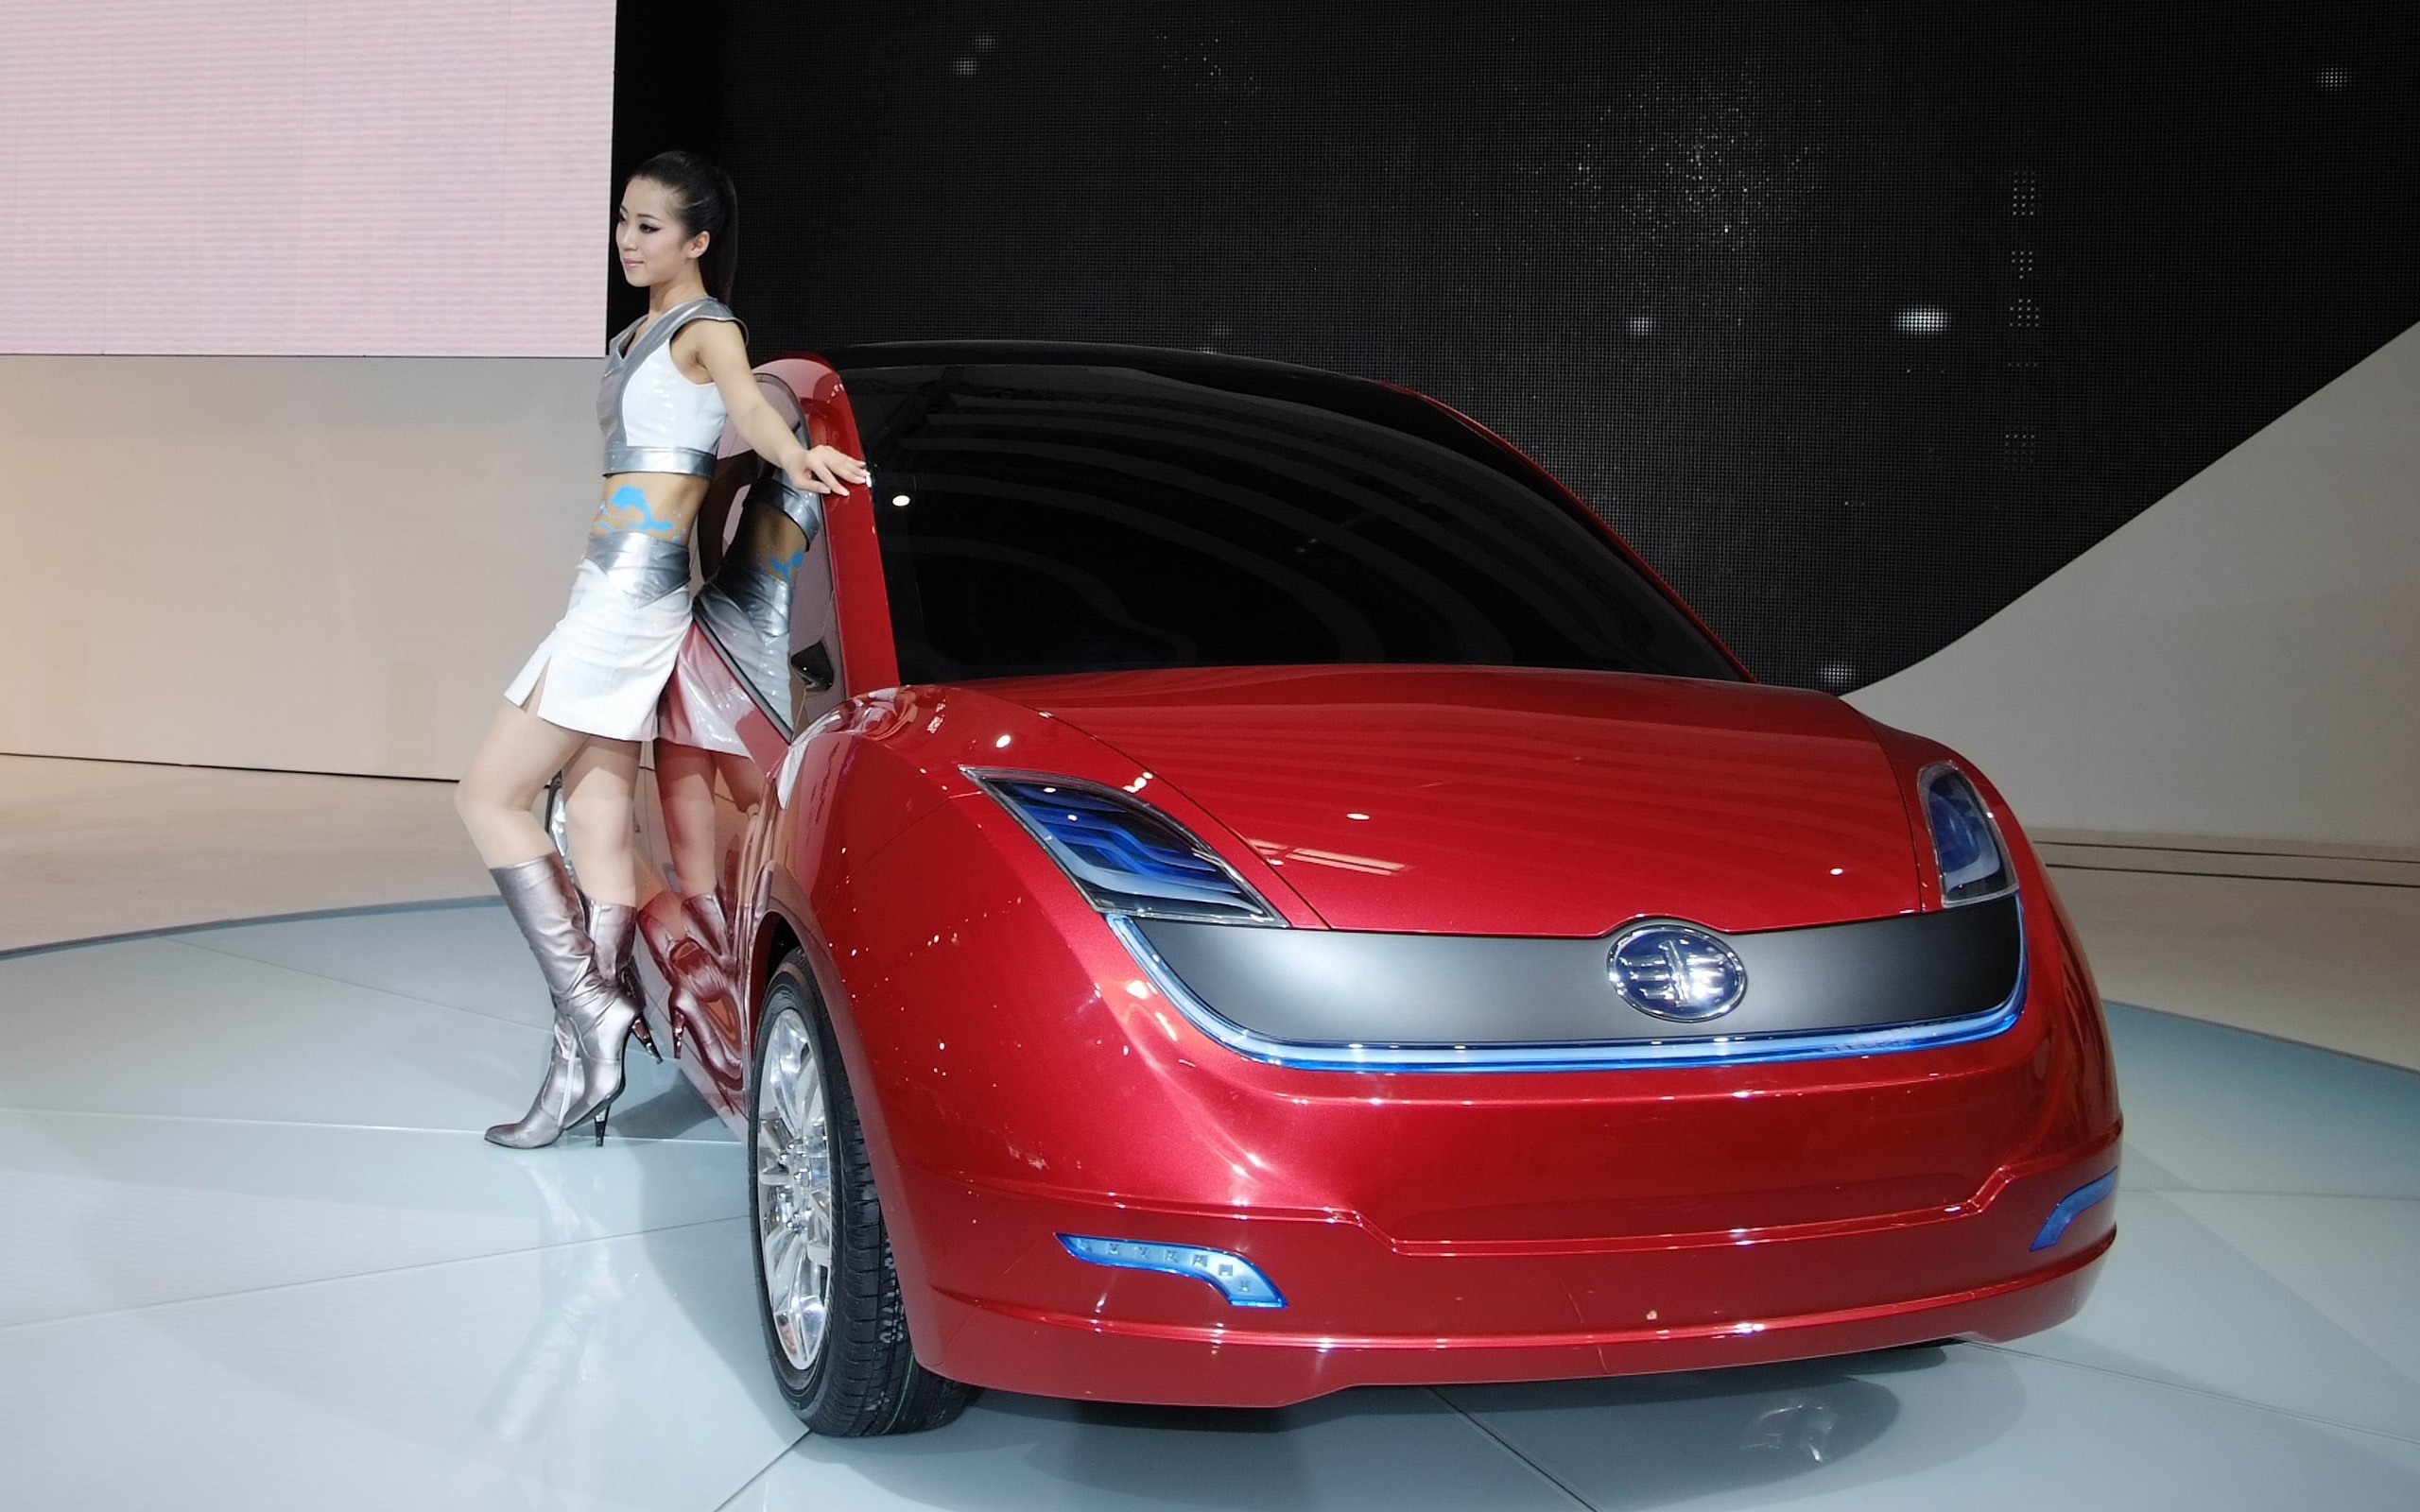 2010北京国际车展 香车美女 (螺纹钢作品)24 - 2560x1600